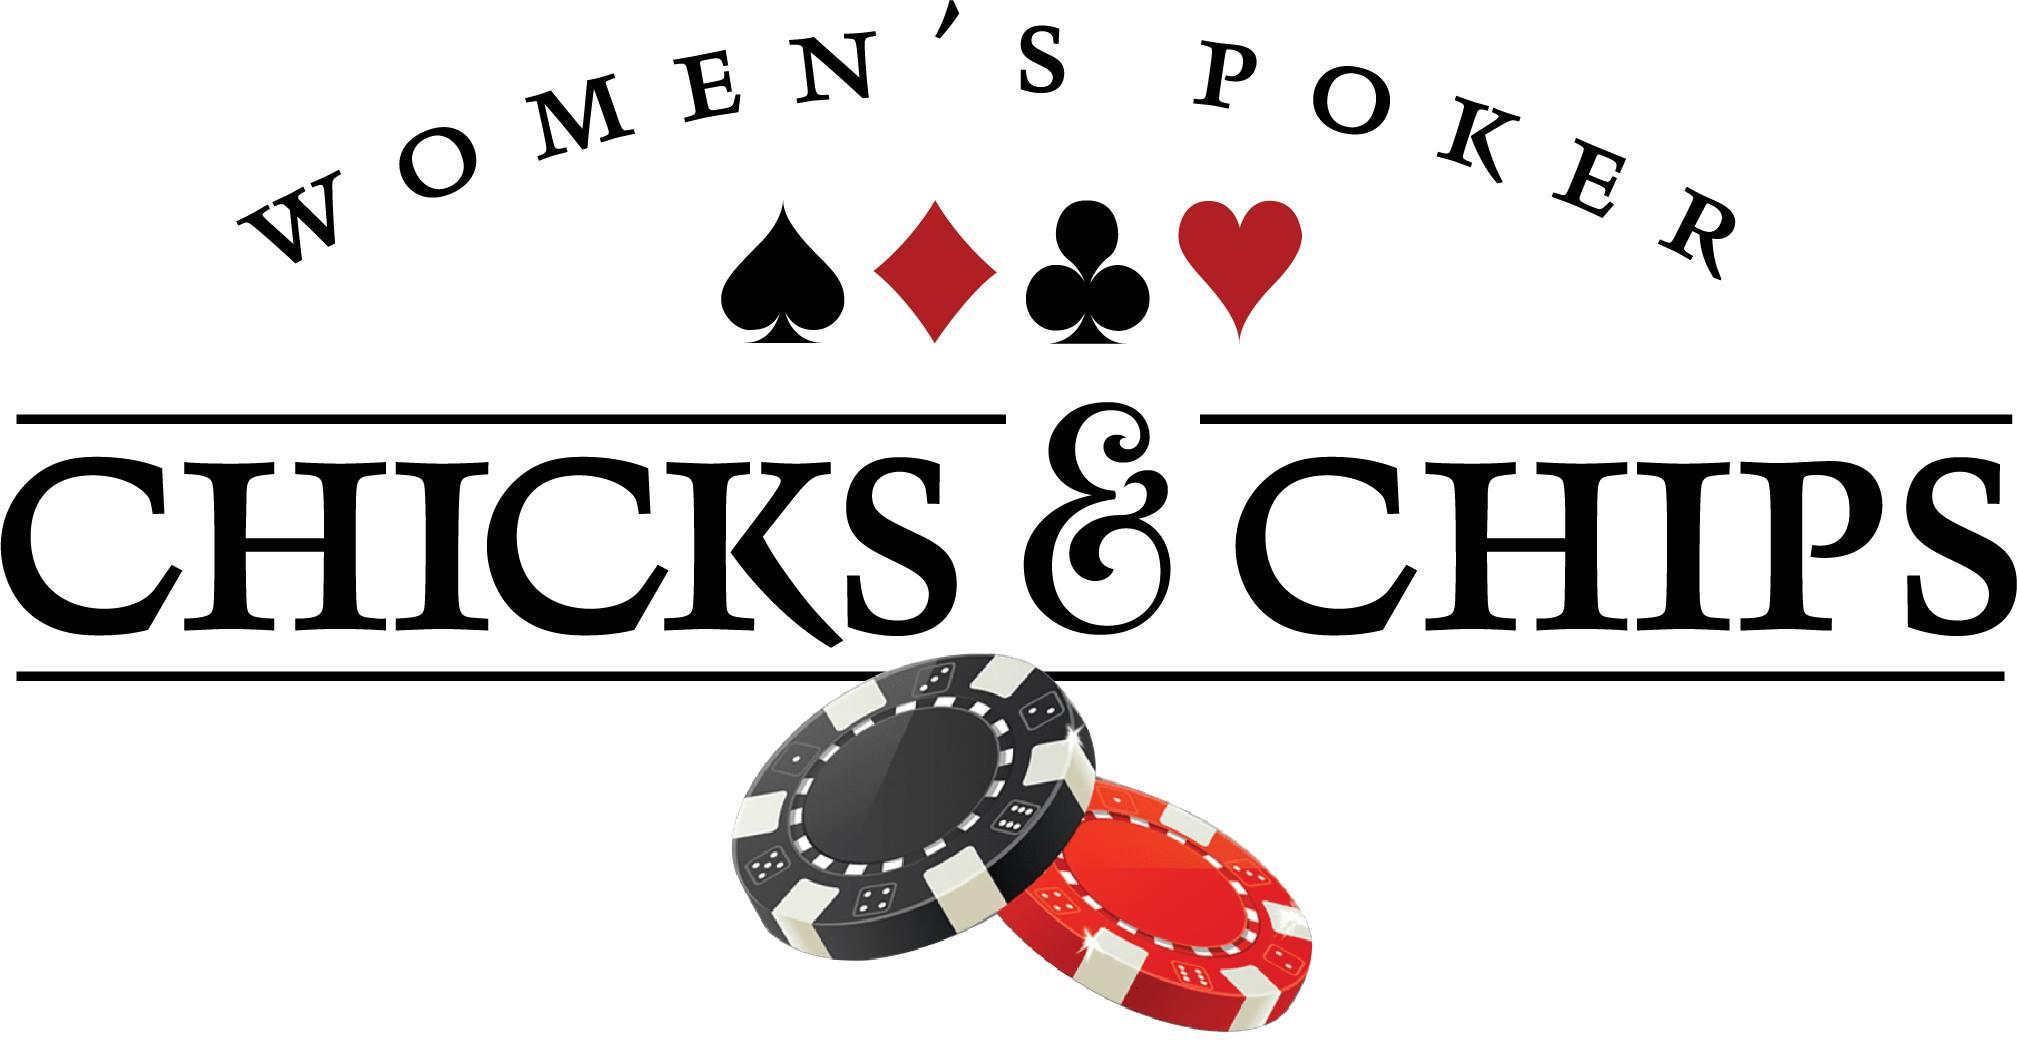 Ladies Poker Night - February